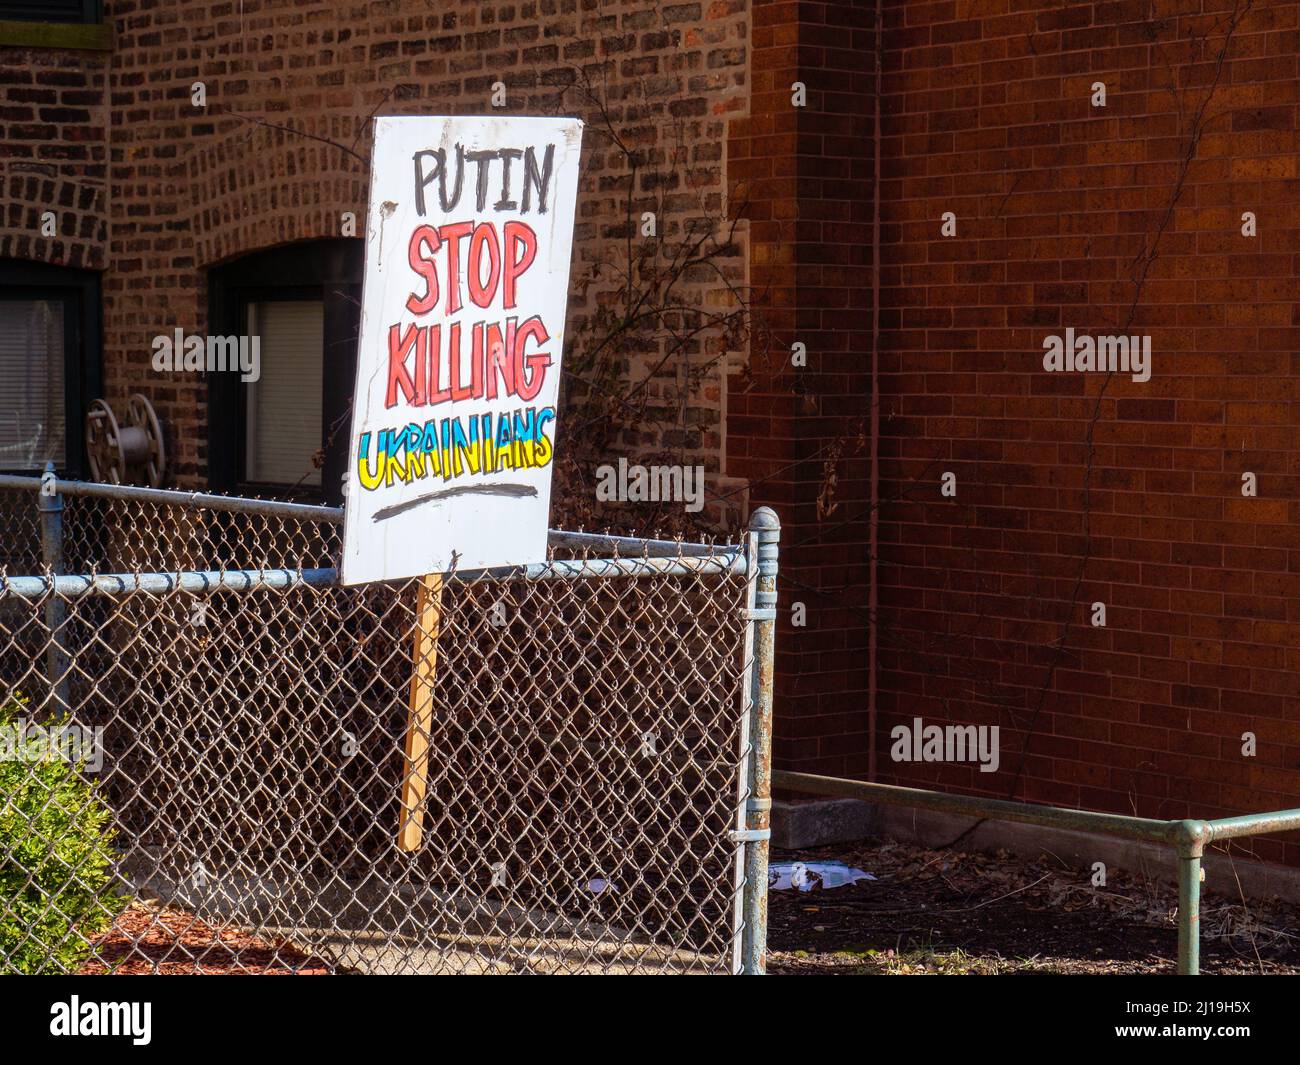 Anti Putin sign in Chicago's Ukrainian Village neighborhood. Stock Photo